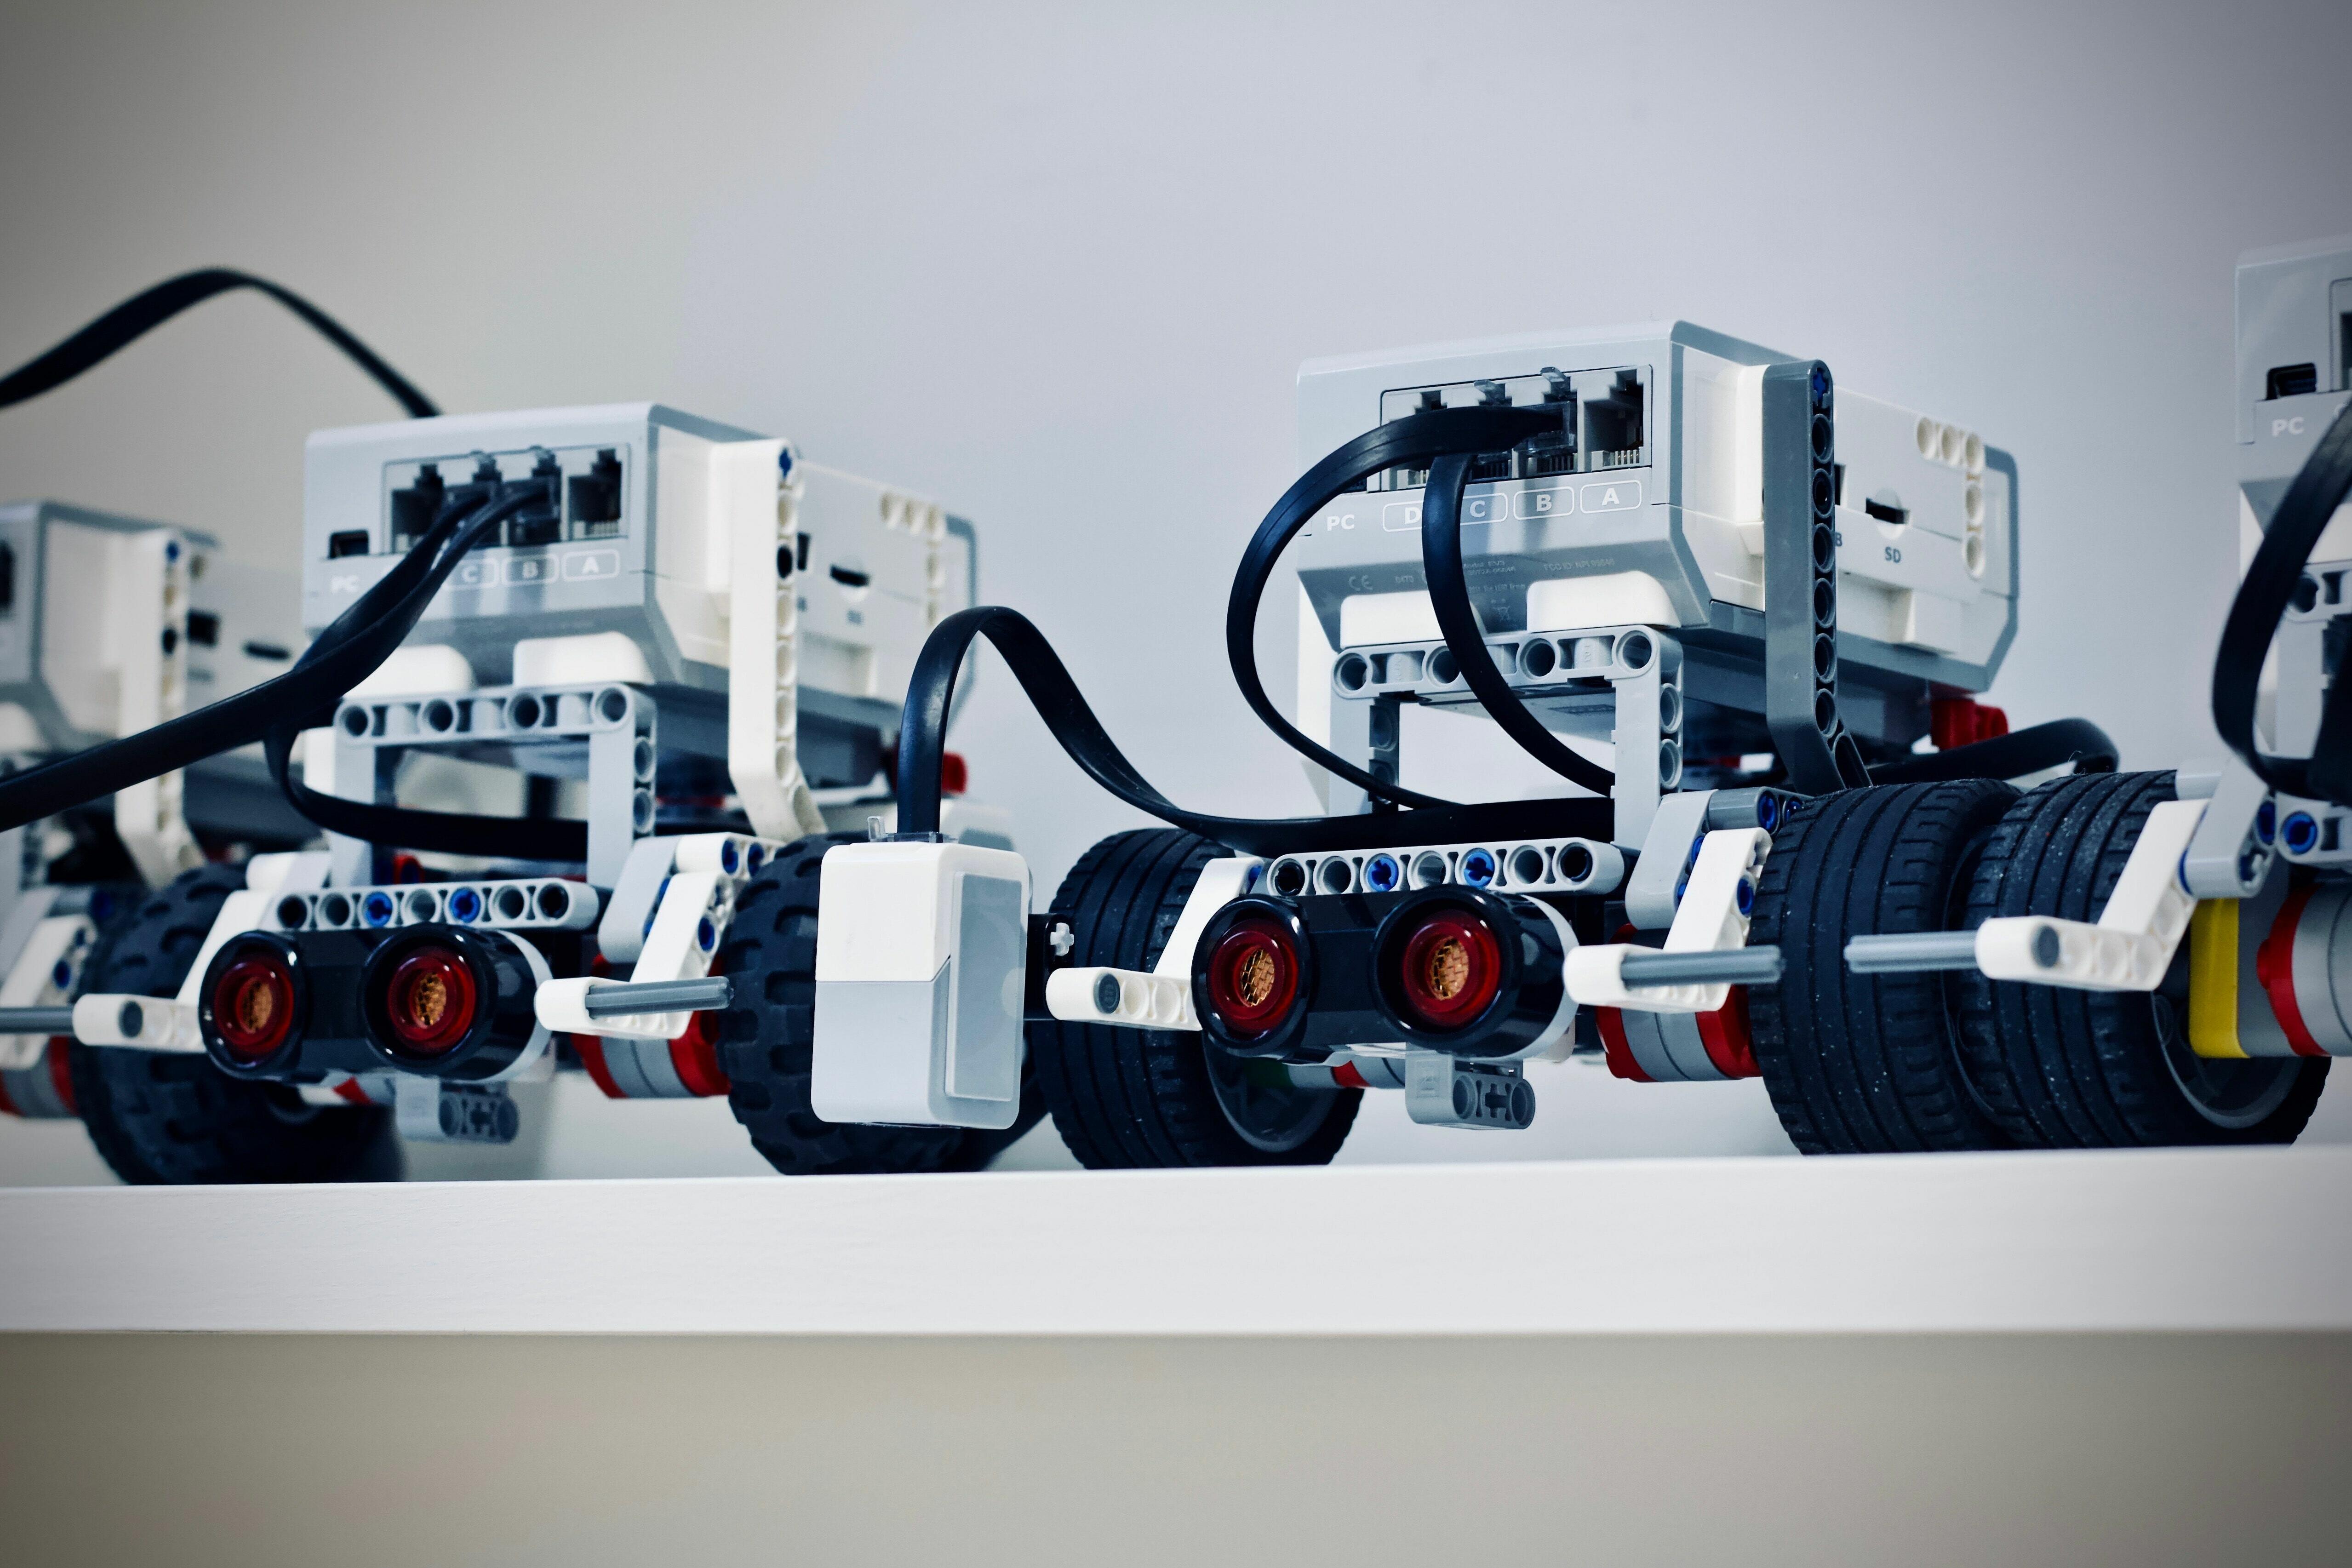 Abbildung von zwei Lego-Robotics.